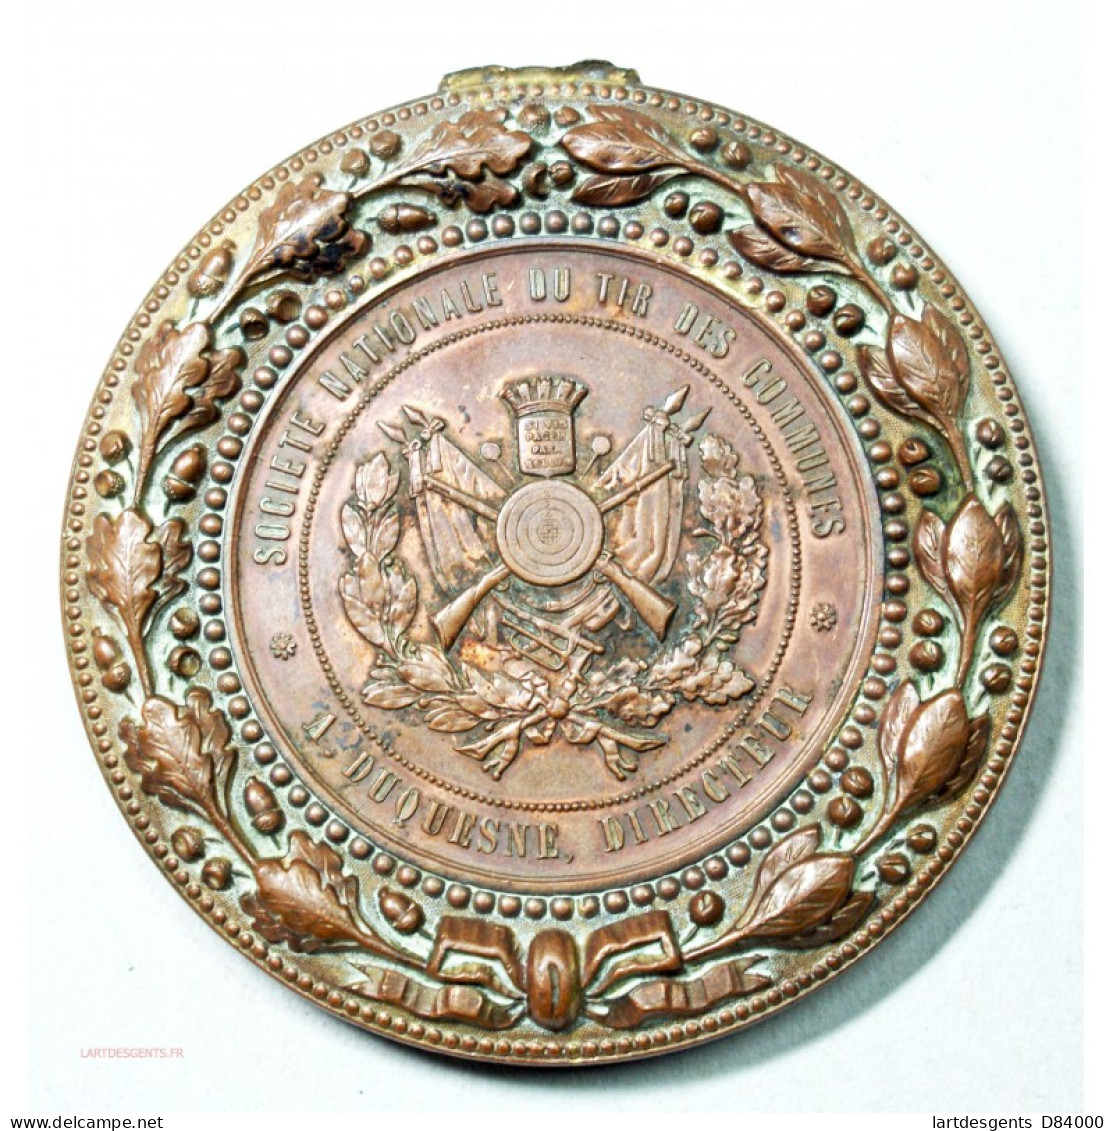 Médaille De Mac-Mahon Sté De Tir Par P. Tasset - Professionali/Di Società